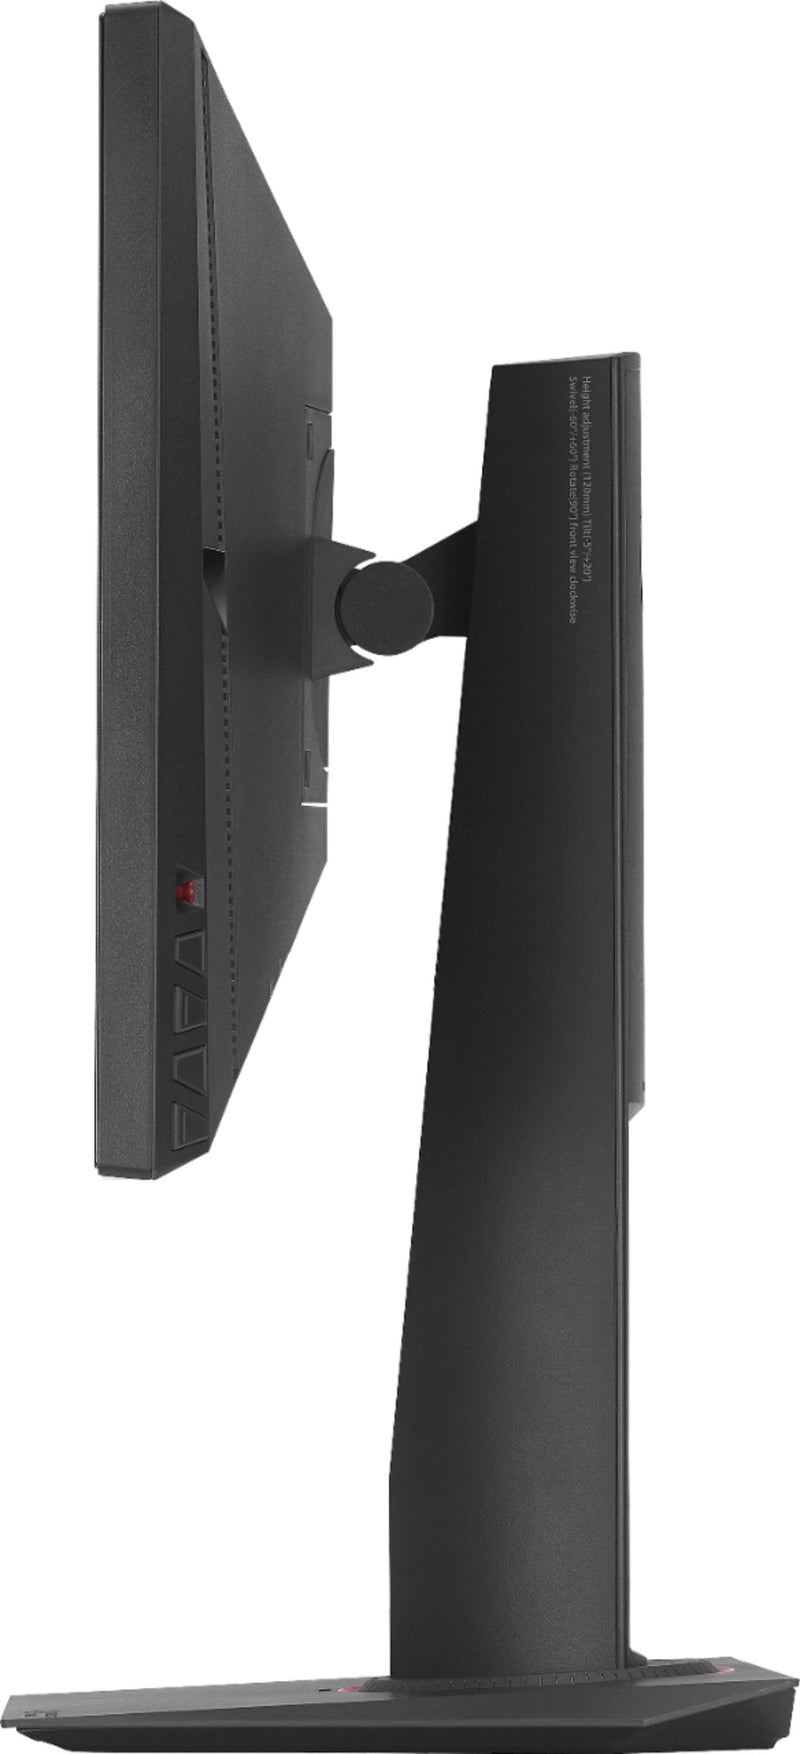 ASUS ROG Swift 24" LCD FHD G-SYNC Monitor Black PG248Q